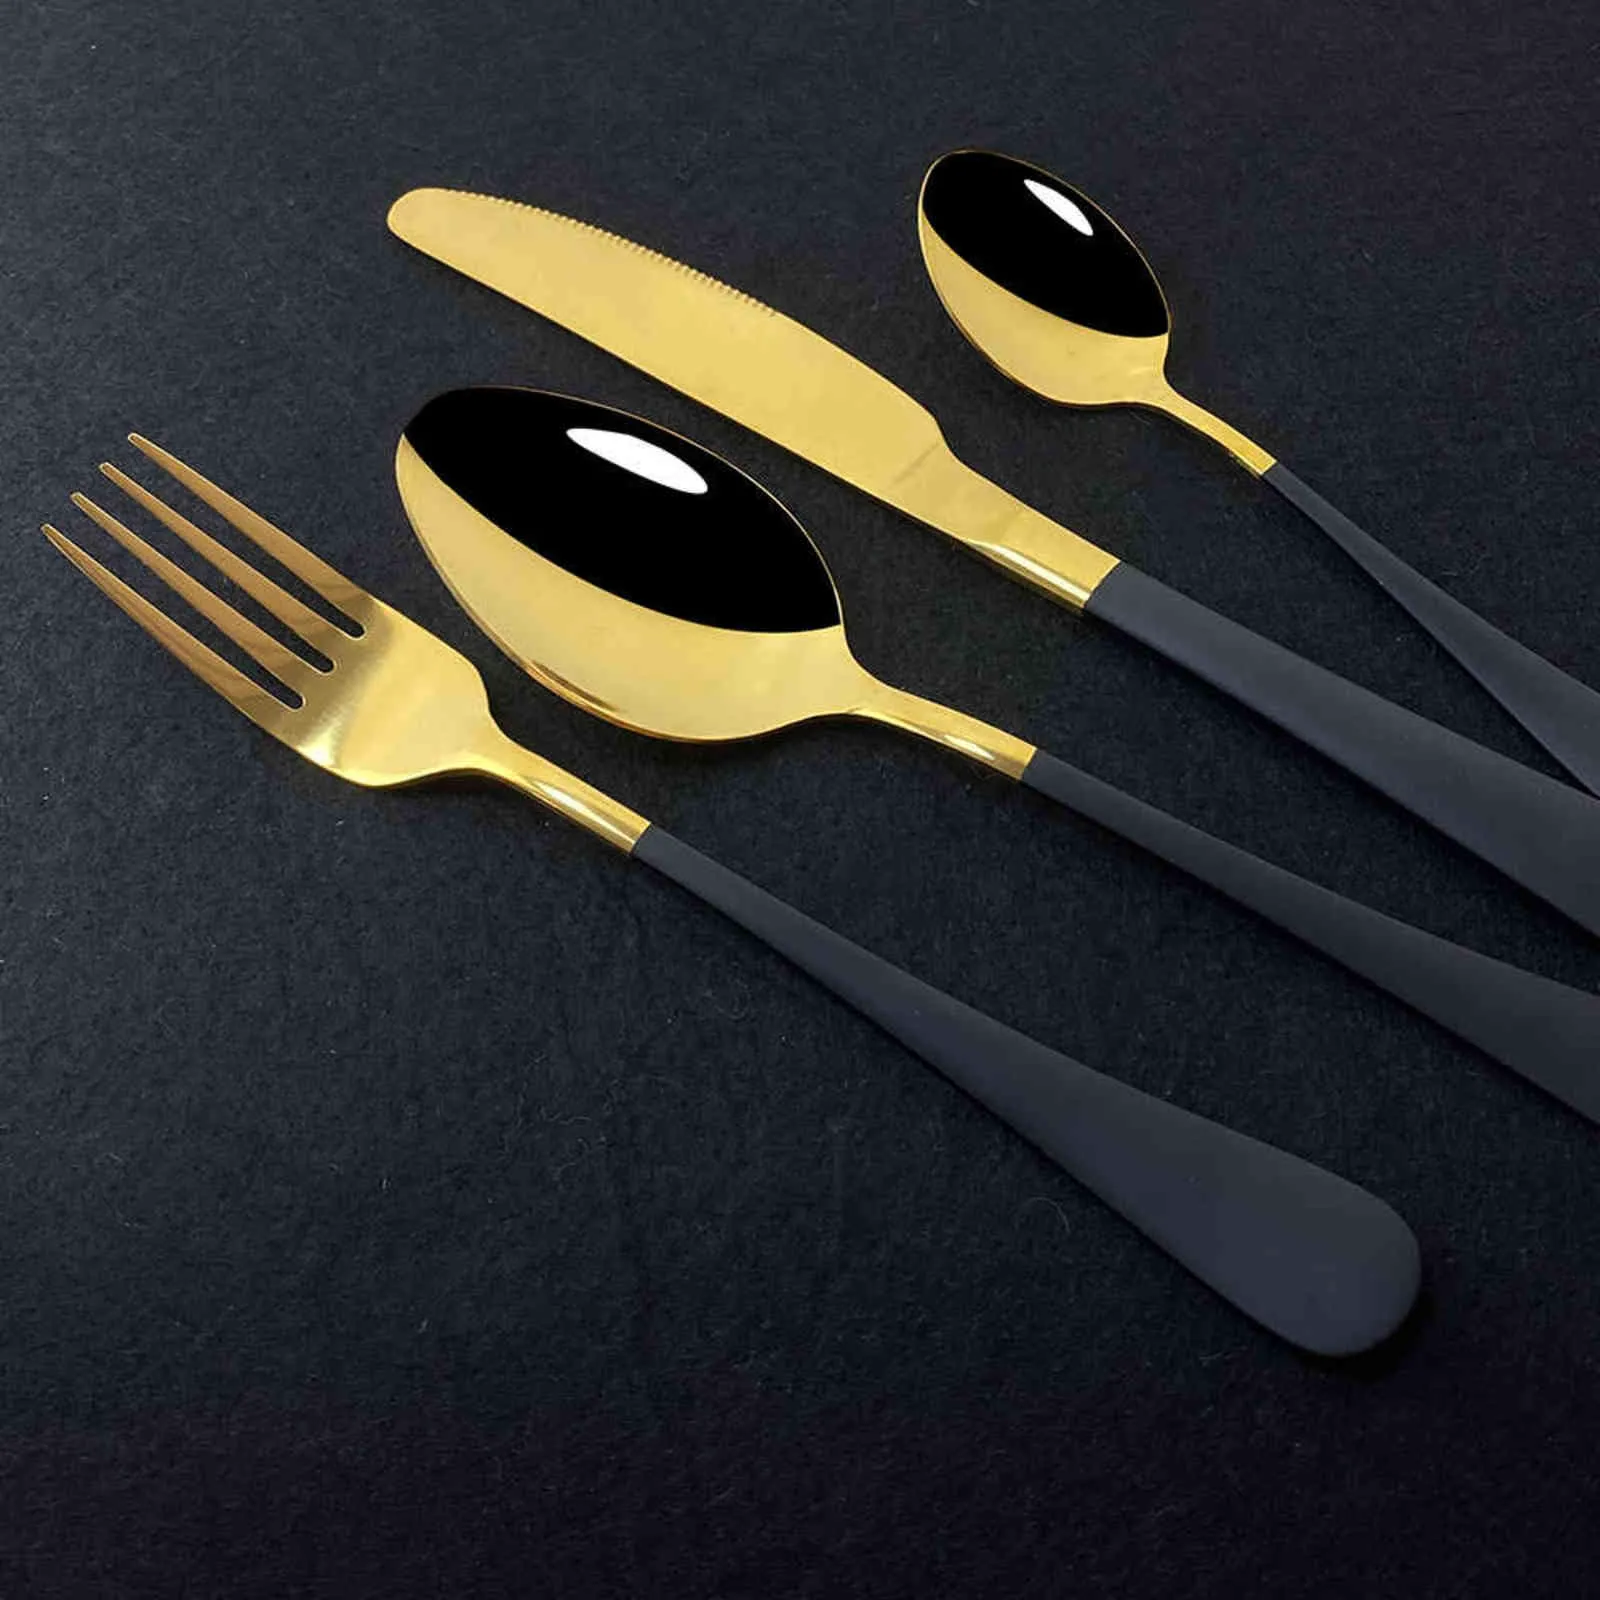 Black Mirror Dinnerware Set Stainless Steel Cutlery Fork Knife Spoon Tableware Flatware Silverware Gift Box 211112